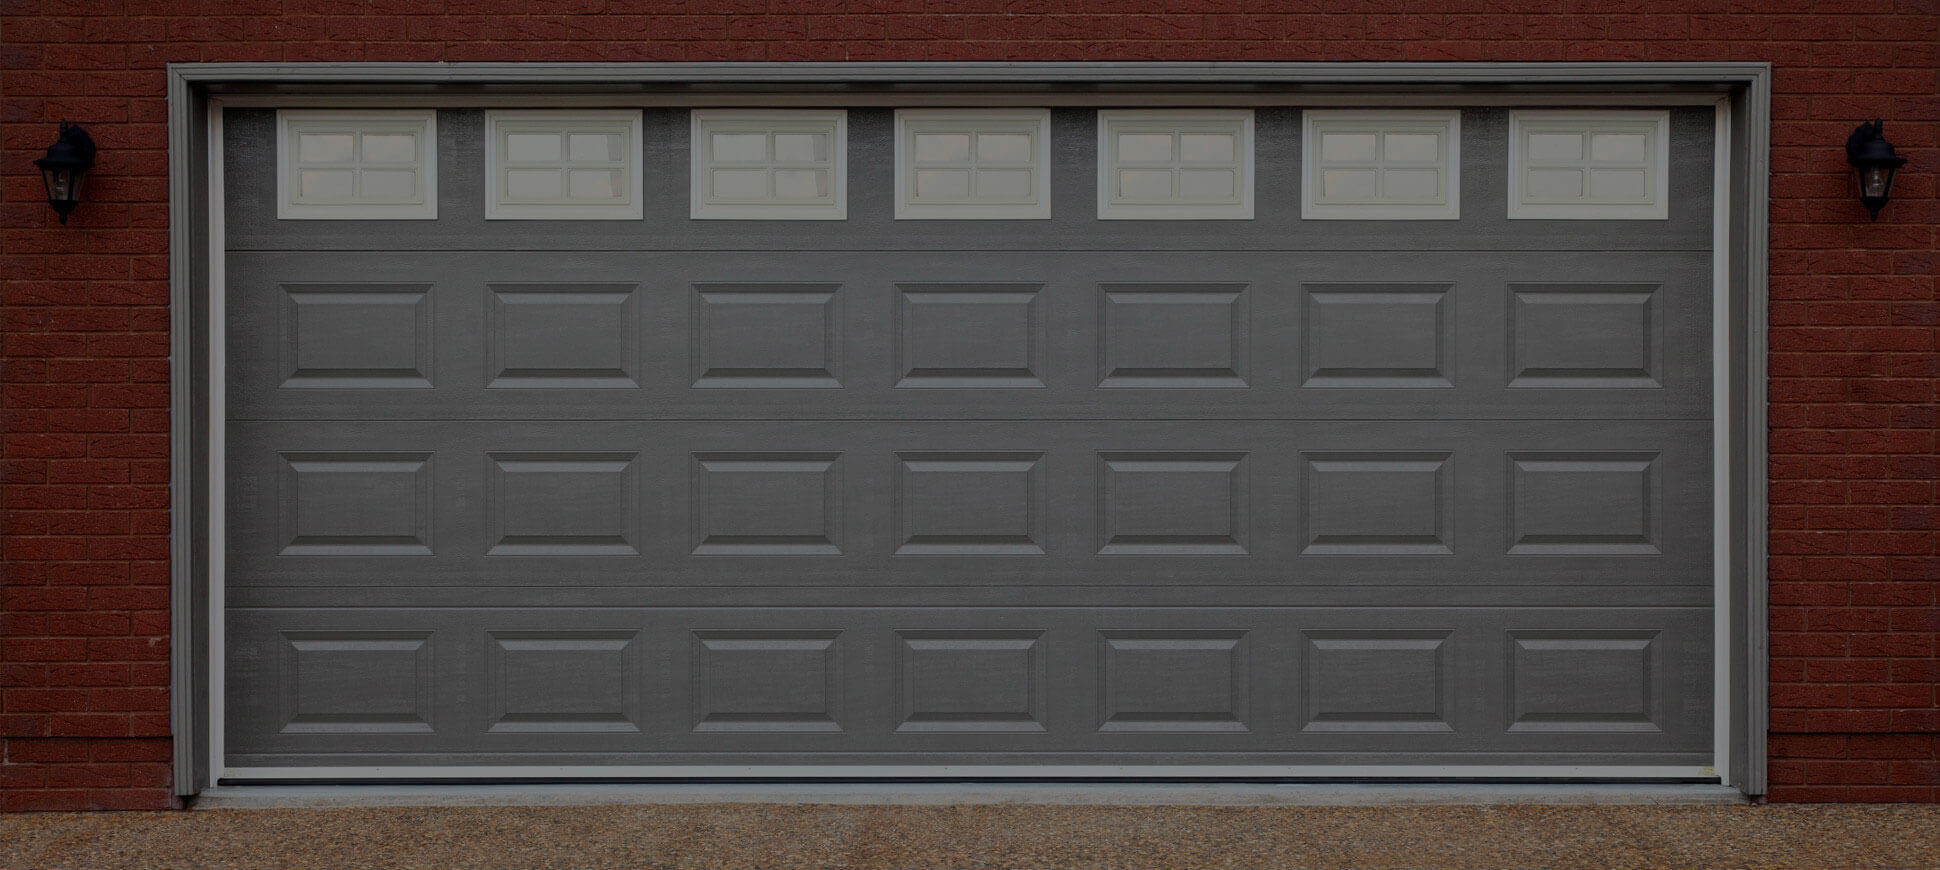 garage door repair & installation - rockland County NY